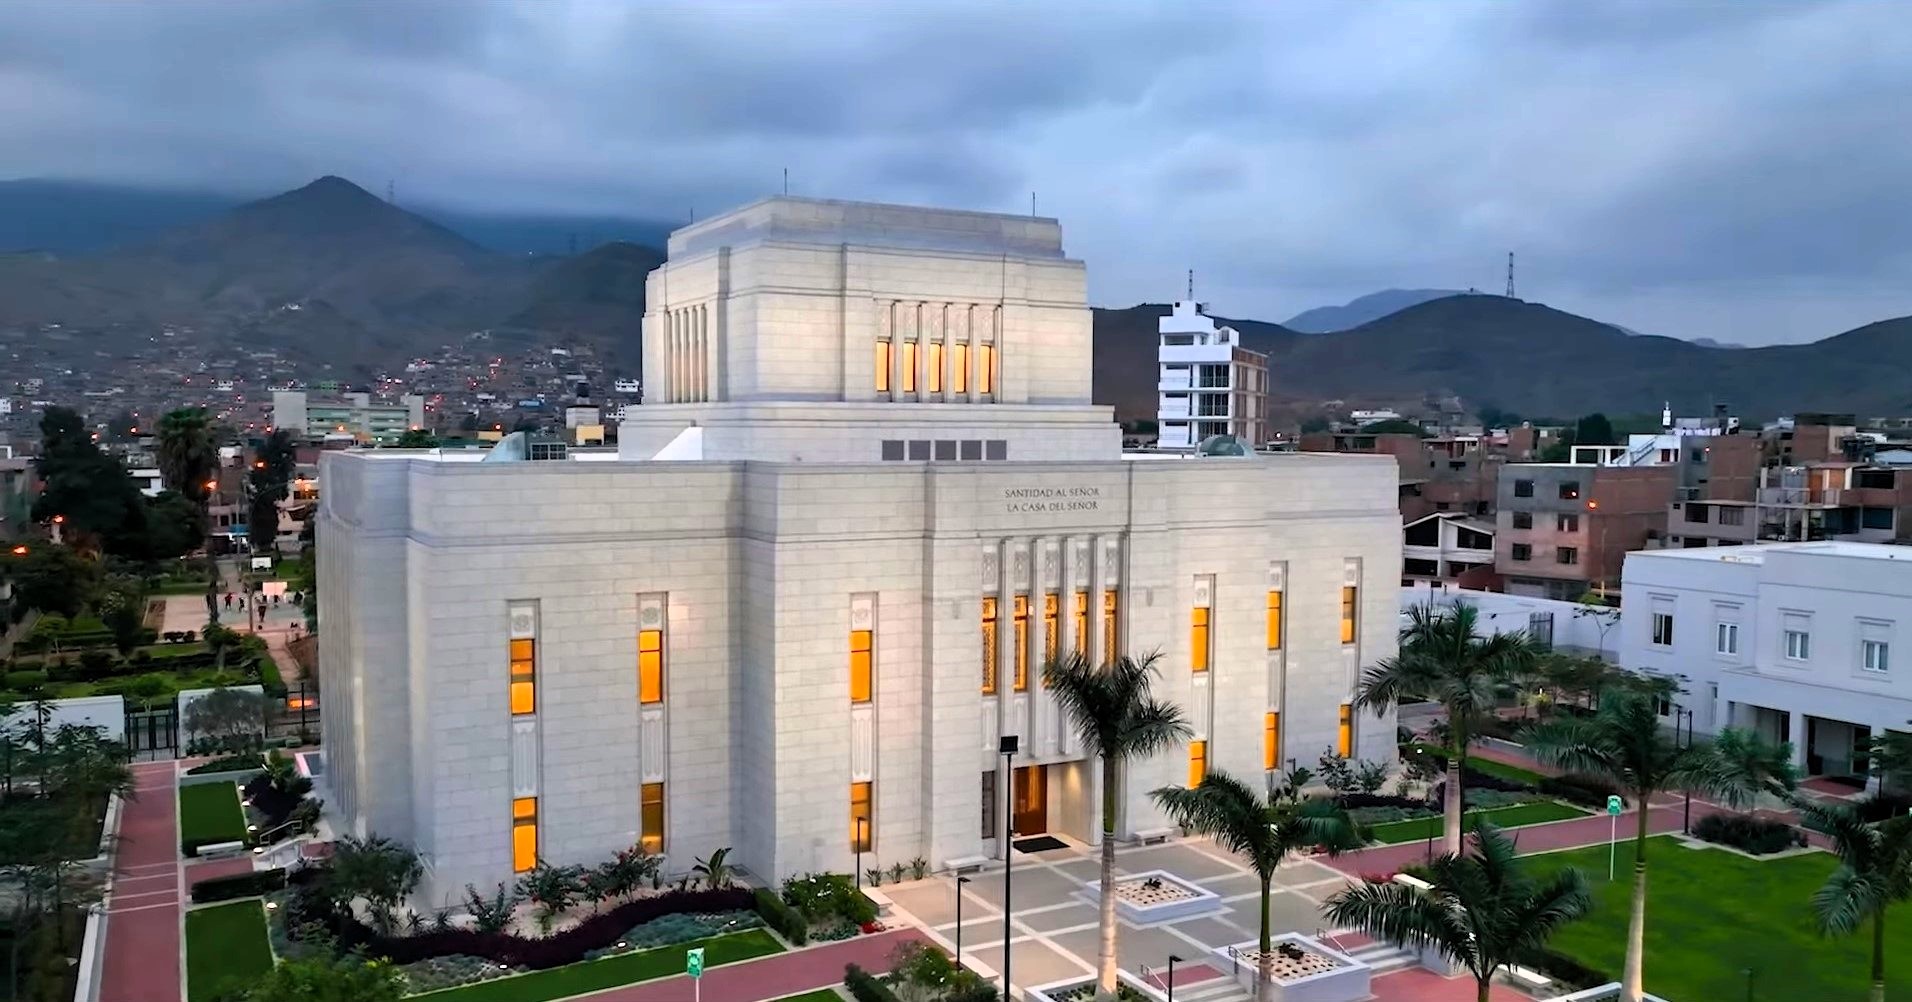 Presentan en conferencia de prensa el Templo de Los Olivos en Lima-Perú, de La Iglesia de Jesucristo de los Santos de los Últimos Días.